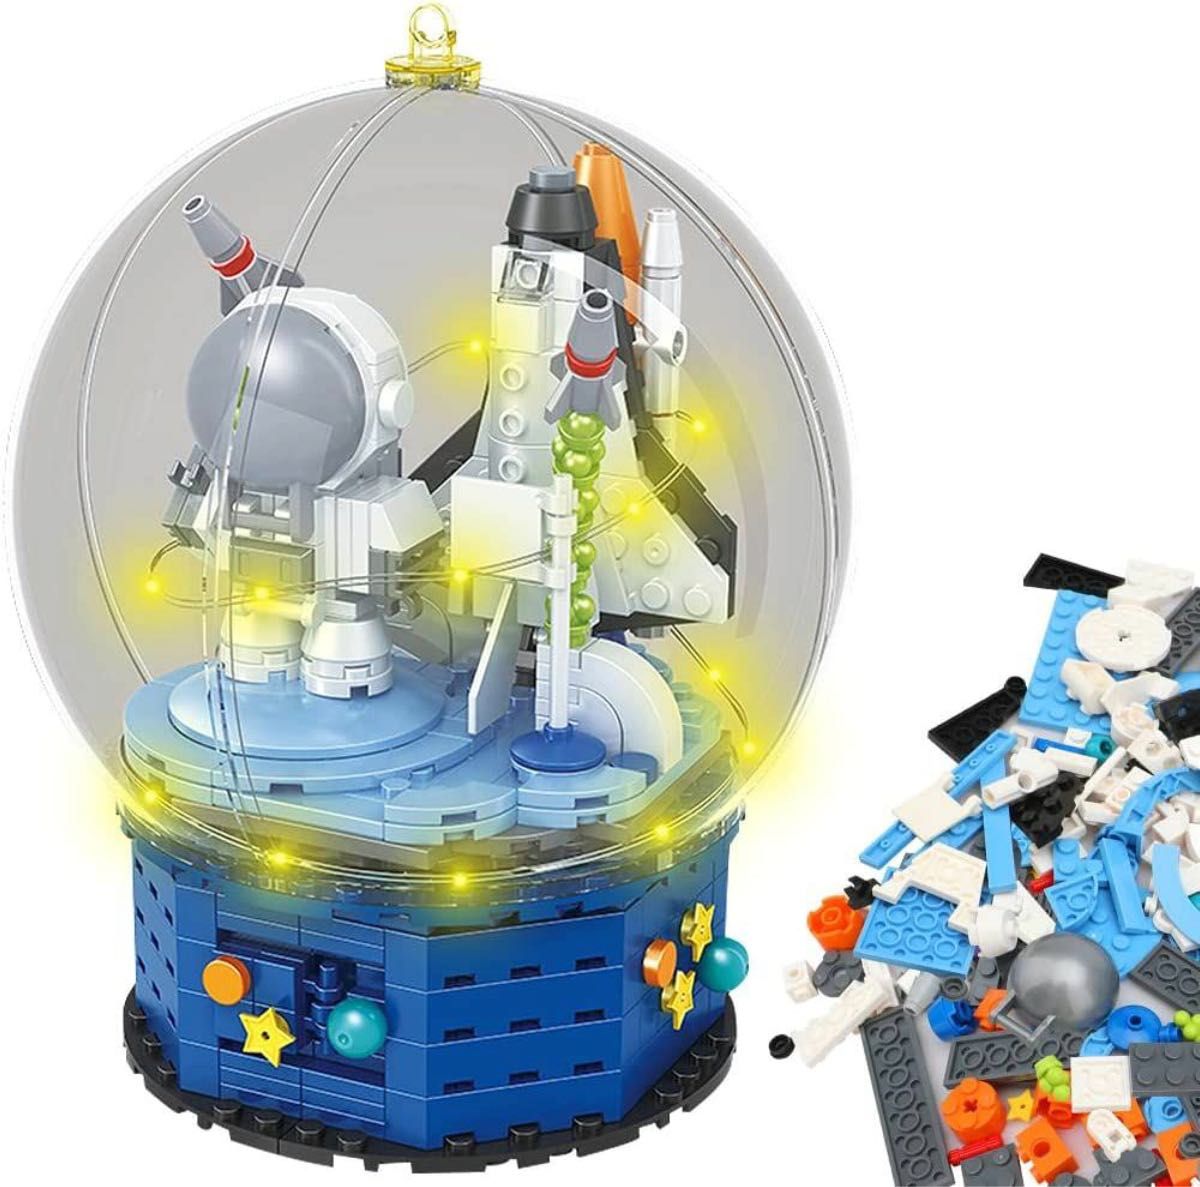 組み立ておもちゃ クリスタルボール ビルディングおもちゃ 宇宙飛行士 370pcs ミニフィグ 立体パズル 積み木 照明ライトつき